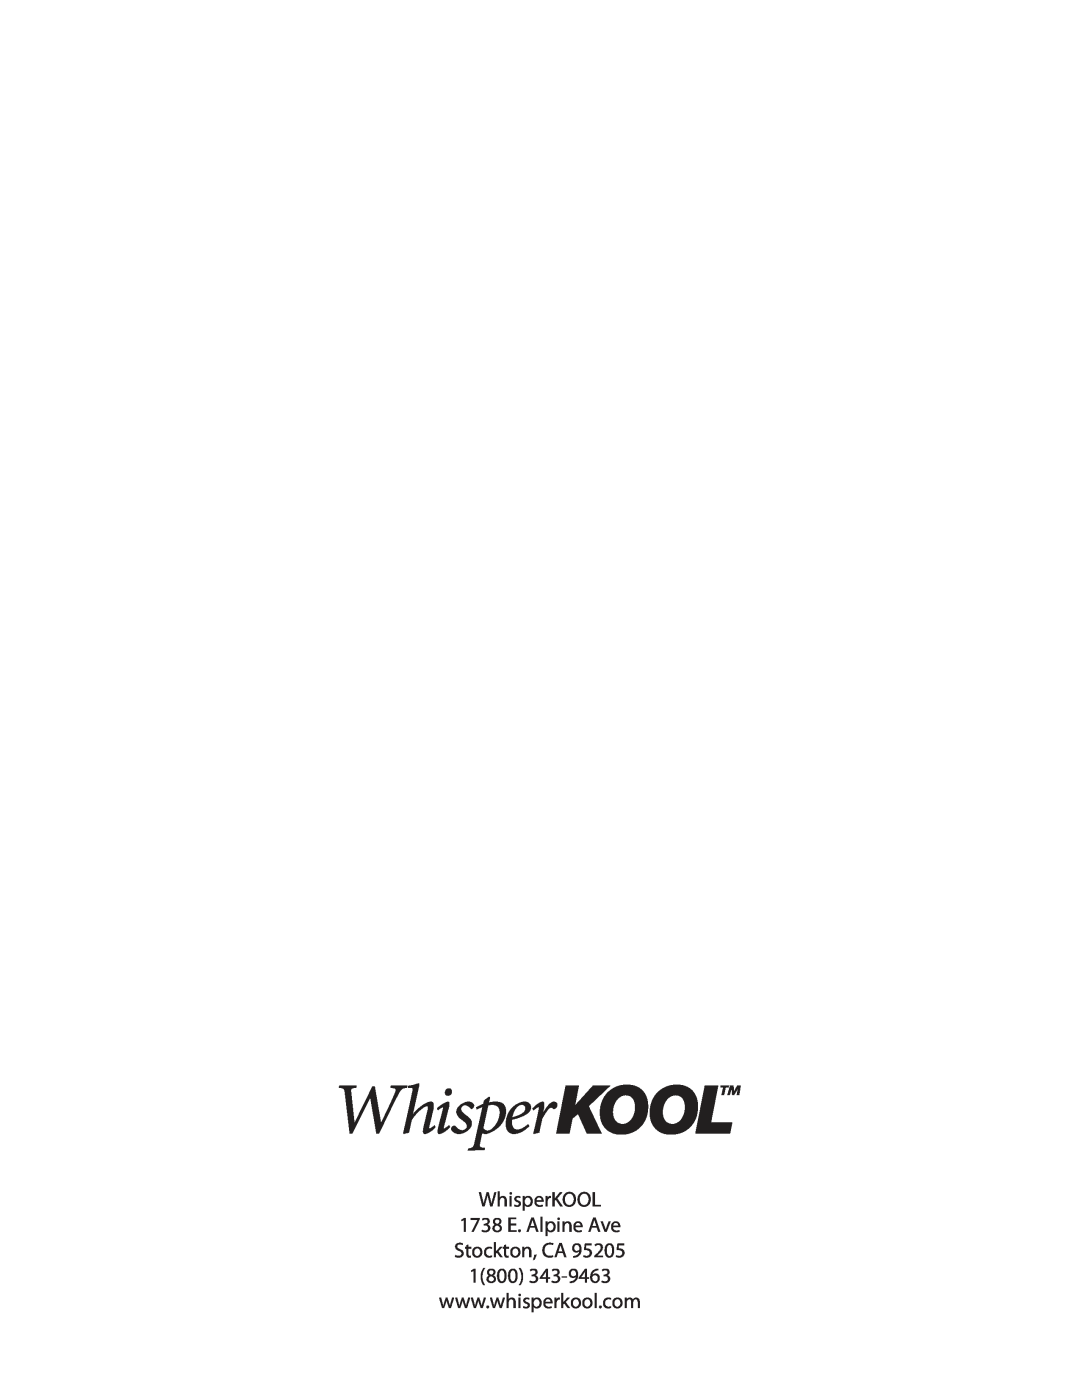 WhisperKool GSM-01, 081310 owner manual WhisperKOOL 